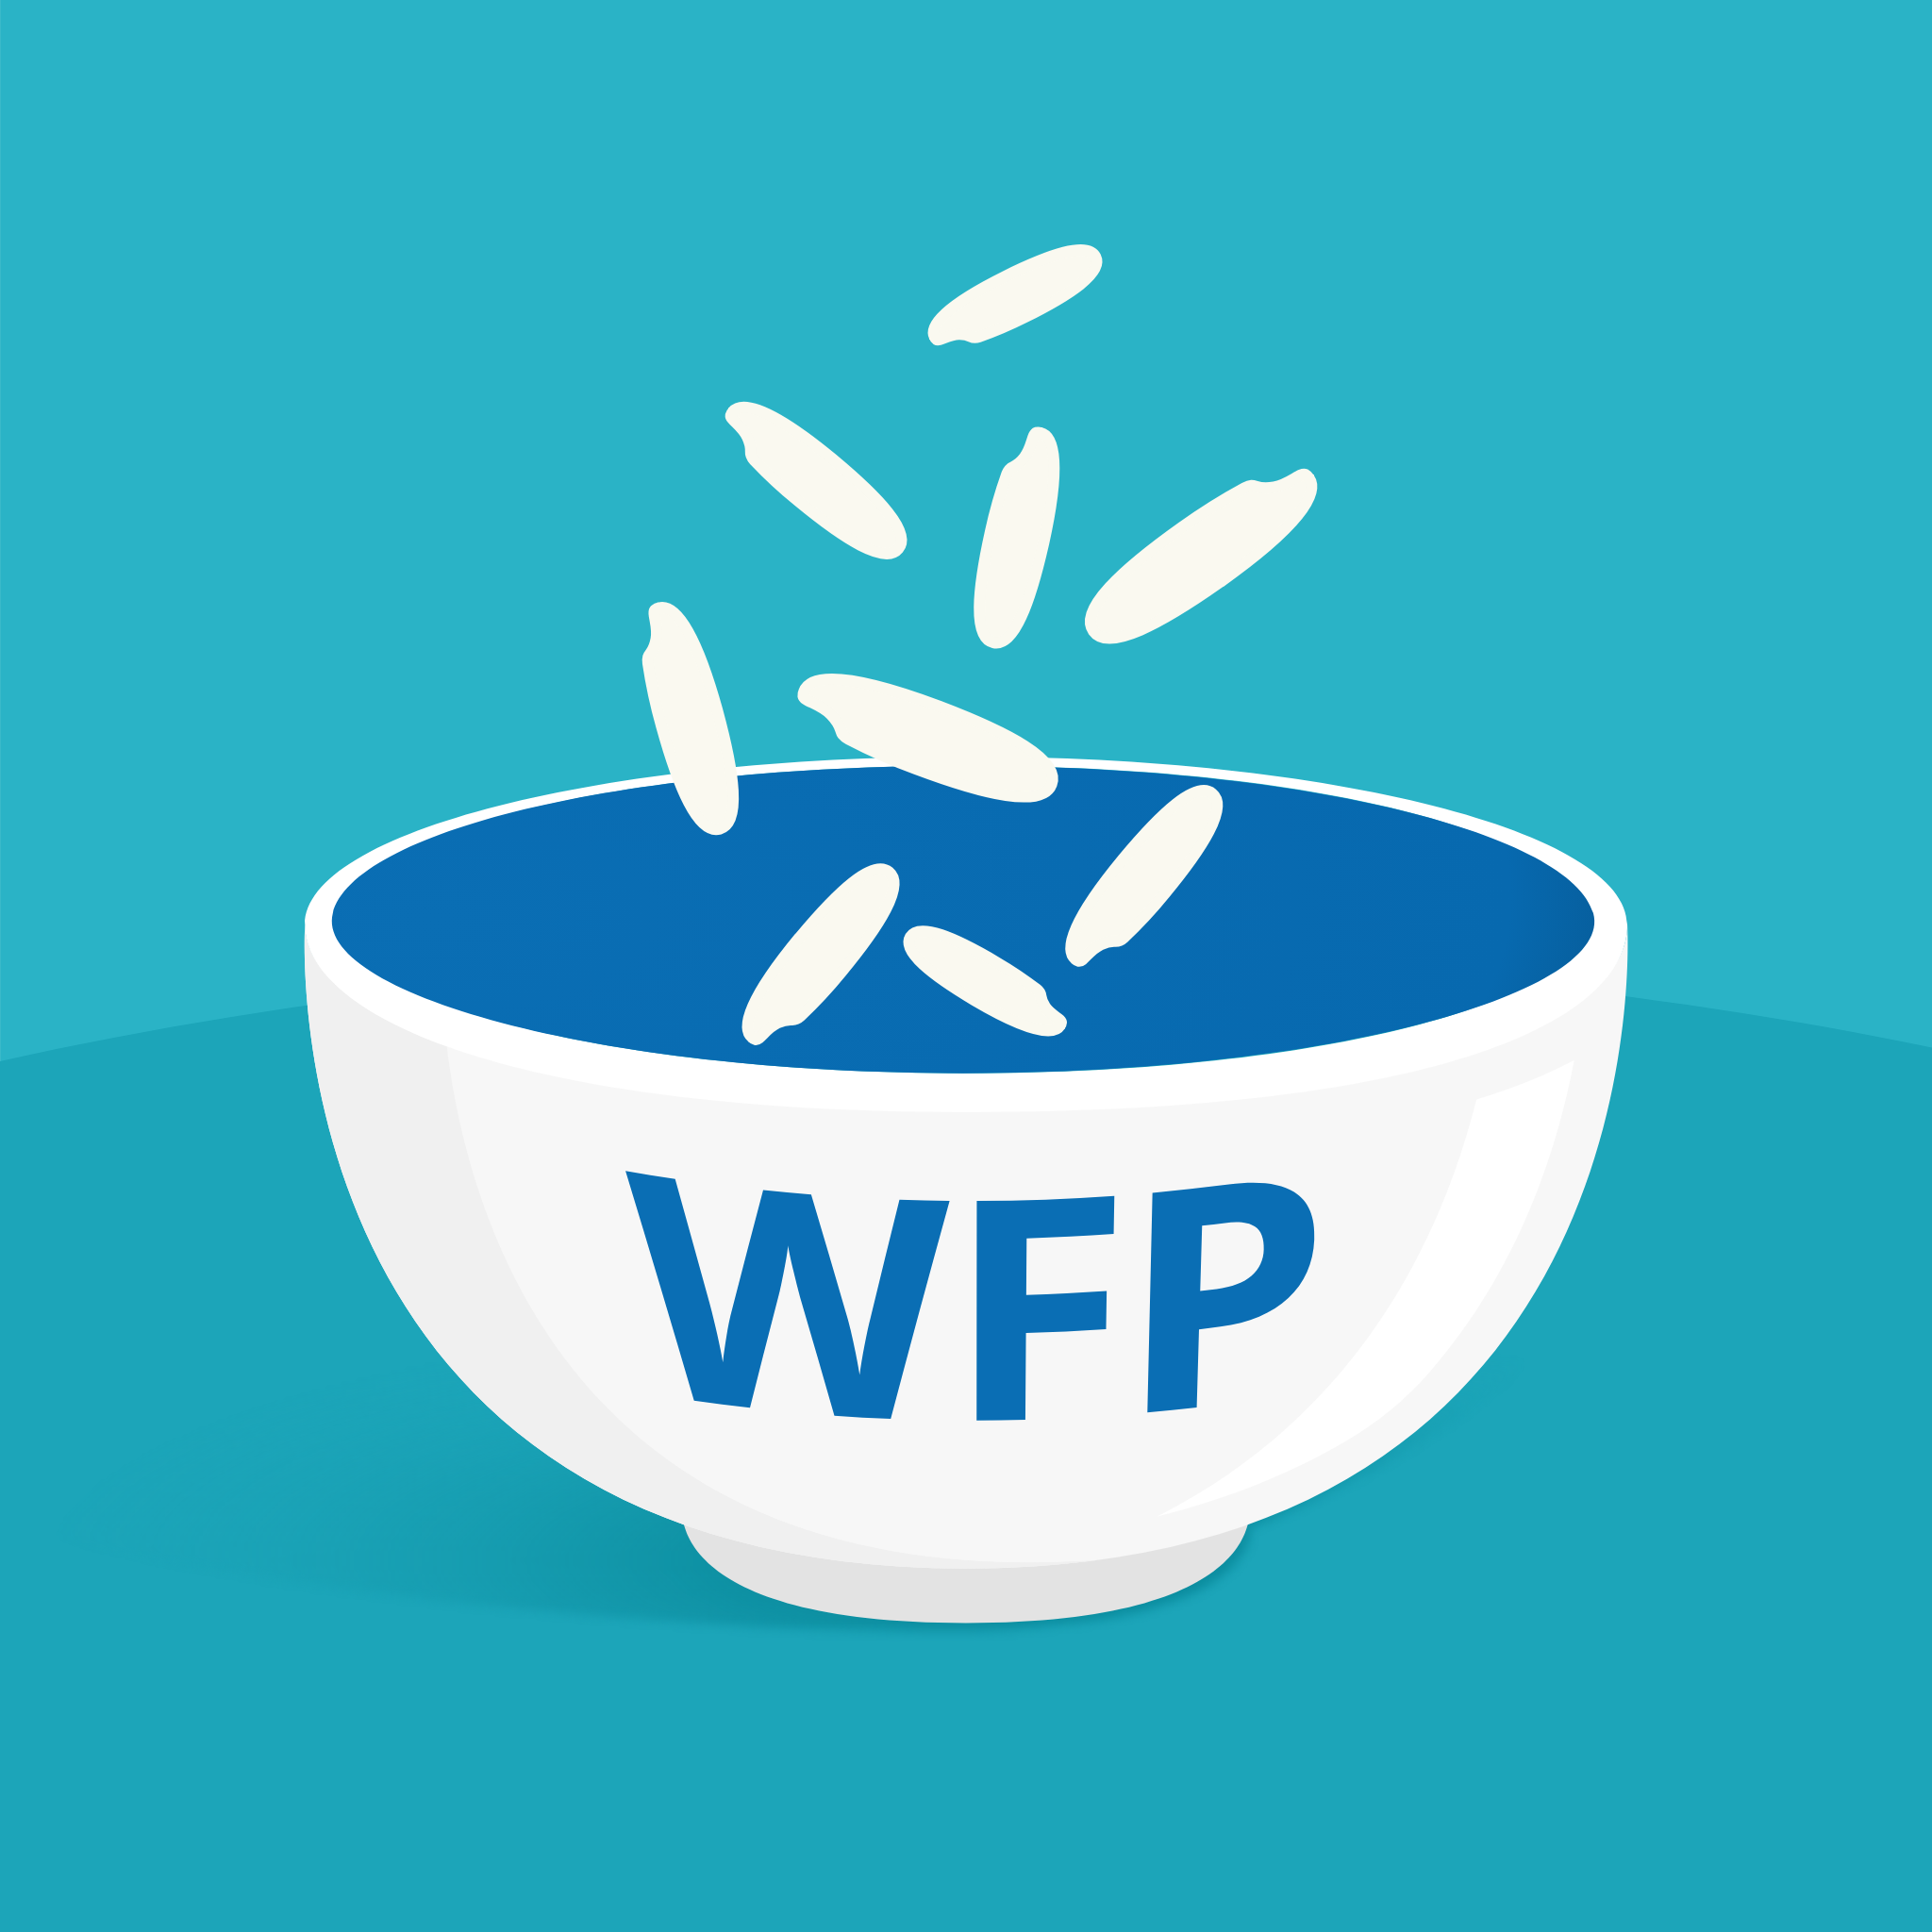 WFP_Freerice_ClimateQuiz